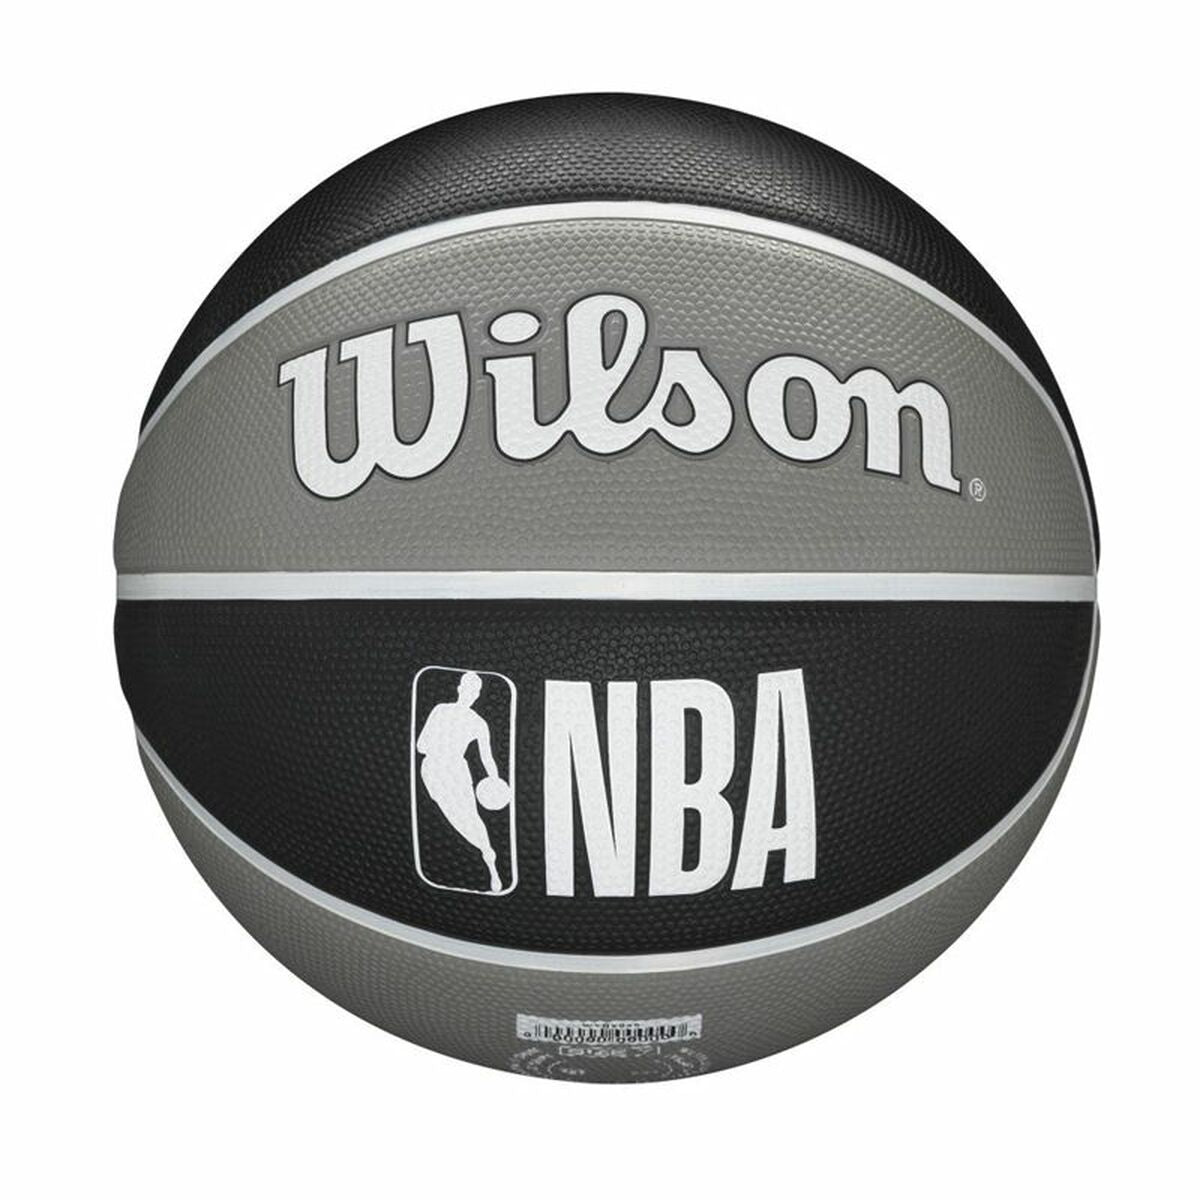 Basketball Wilson Nba Team Tribute Brooklyn Nets Schwarz Kautschuk Einheitsgröße 7